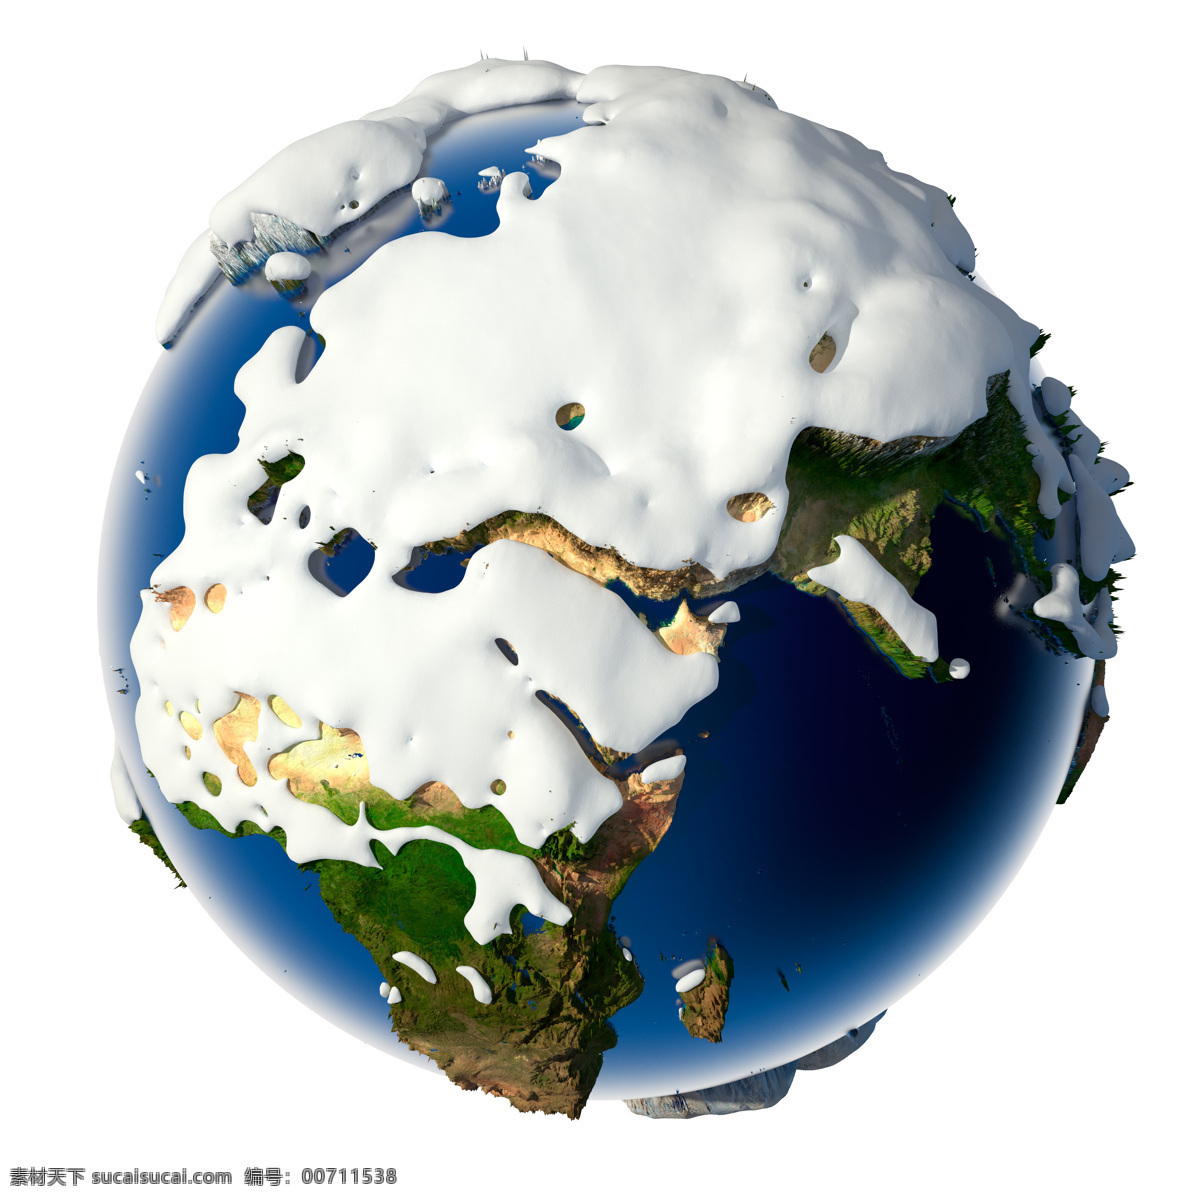 积雪 覆盖 亚欧 非 大陆 亚欧非 地球 积雪覆盖 冬天 星球 宇宙太空 环境家居